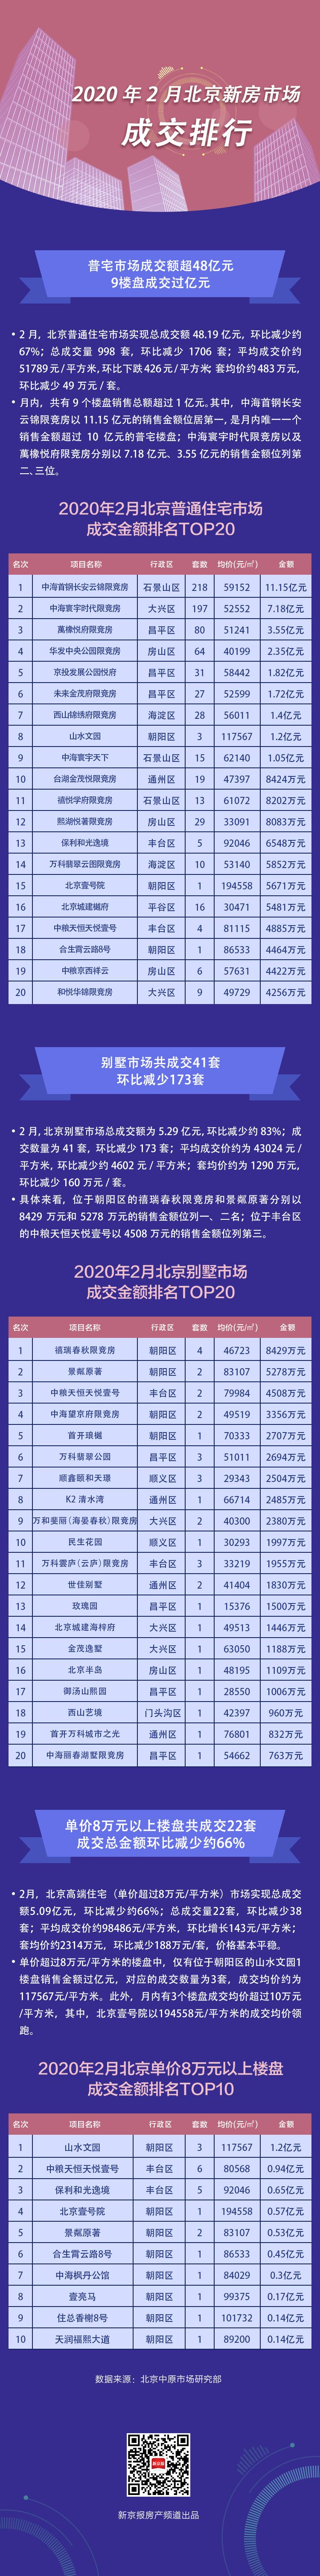 2月北京新建商品房成交2771套 创一年内新低